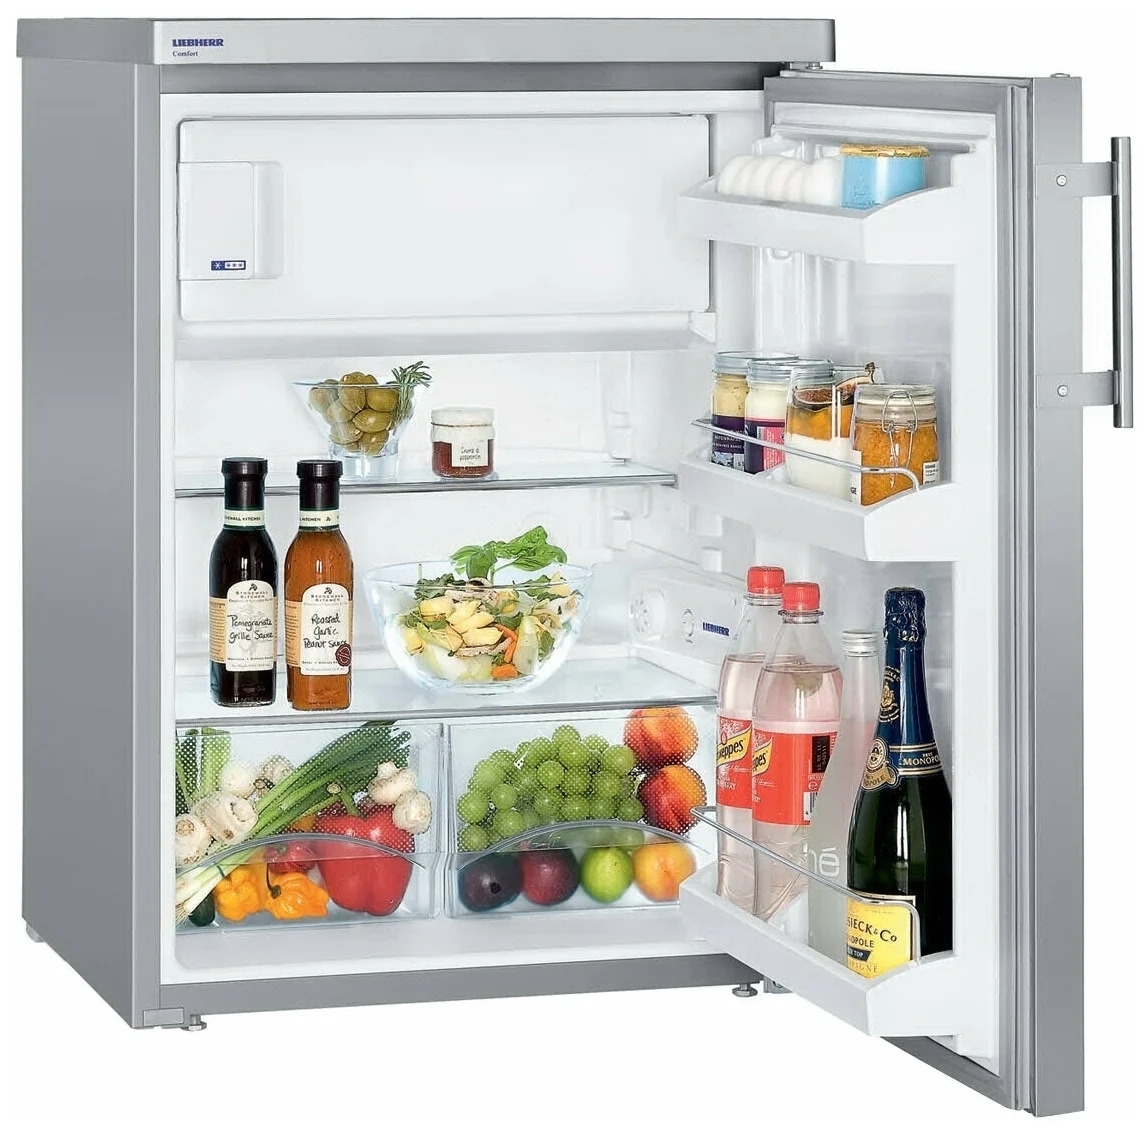 Холодильник с доставкой спб недорого